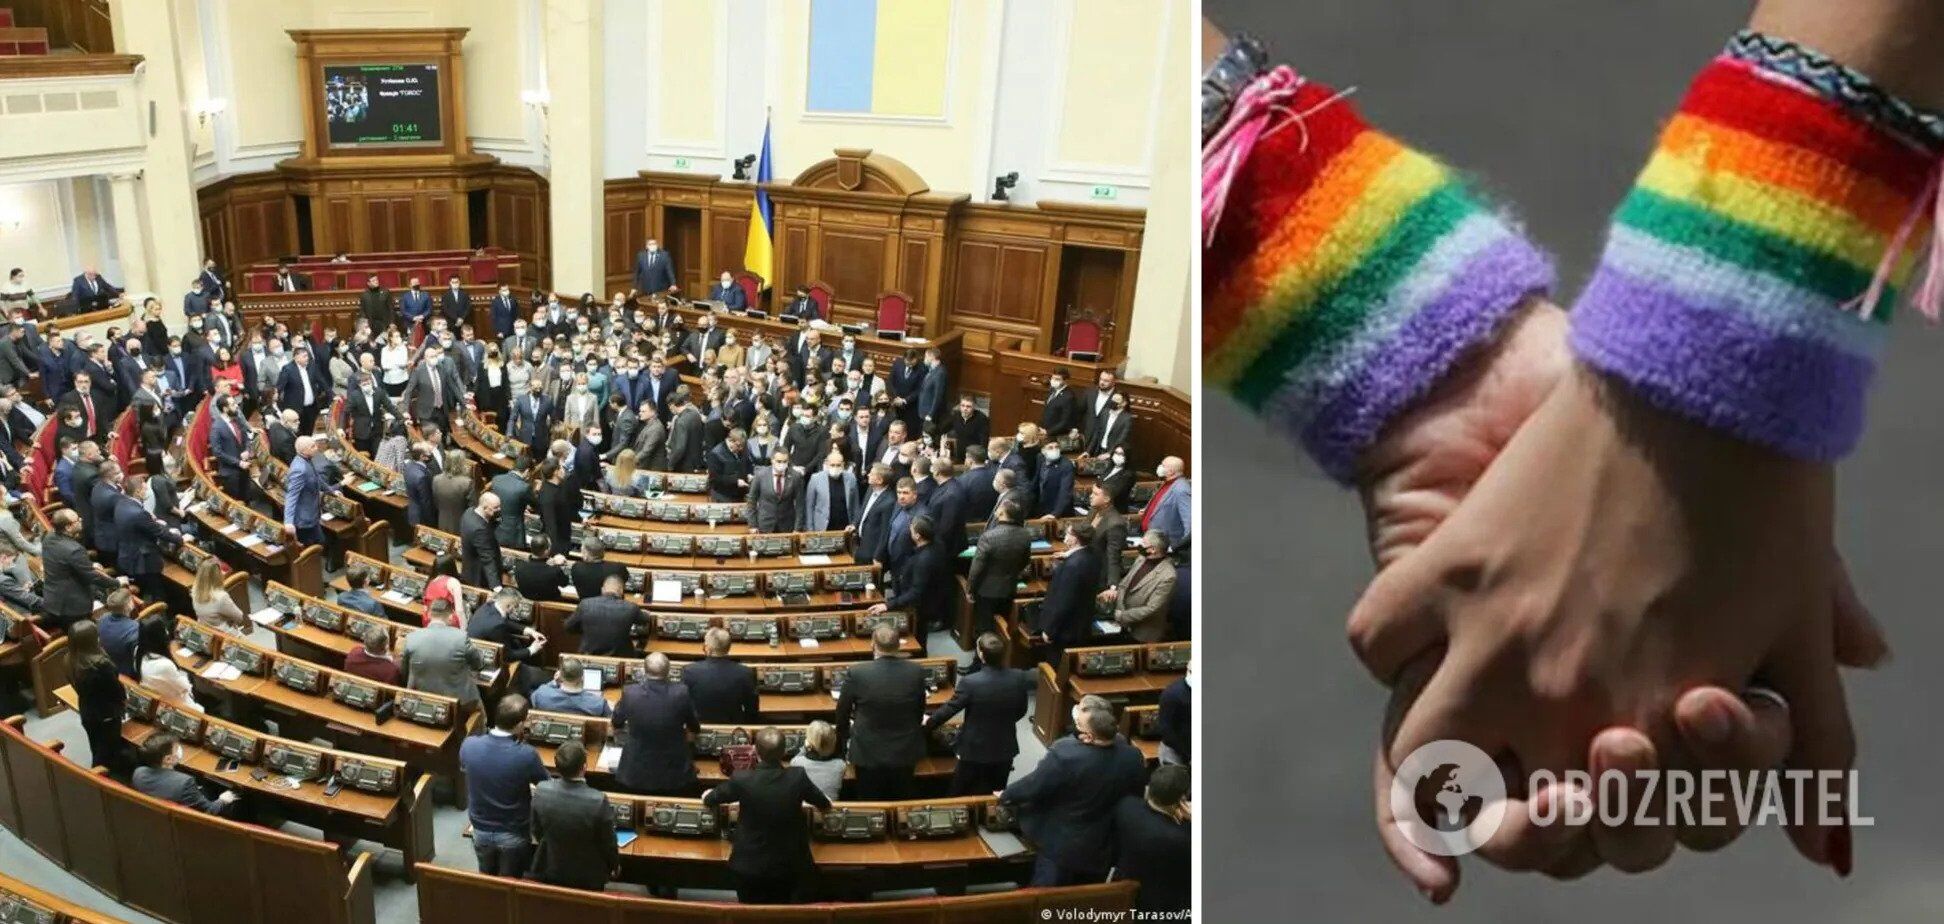 ЕСПЧ обязал Украину юридически признать однополые пары: подробности решения